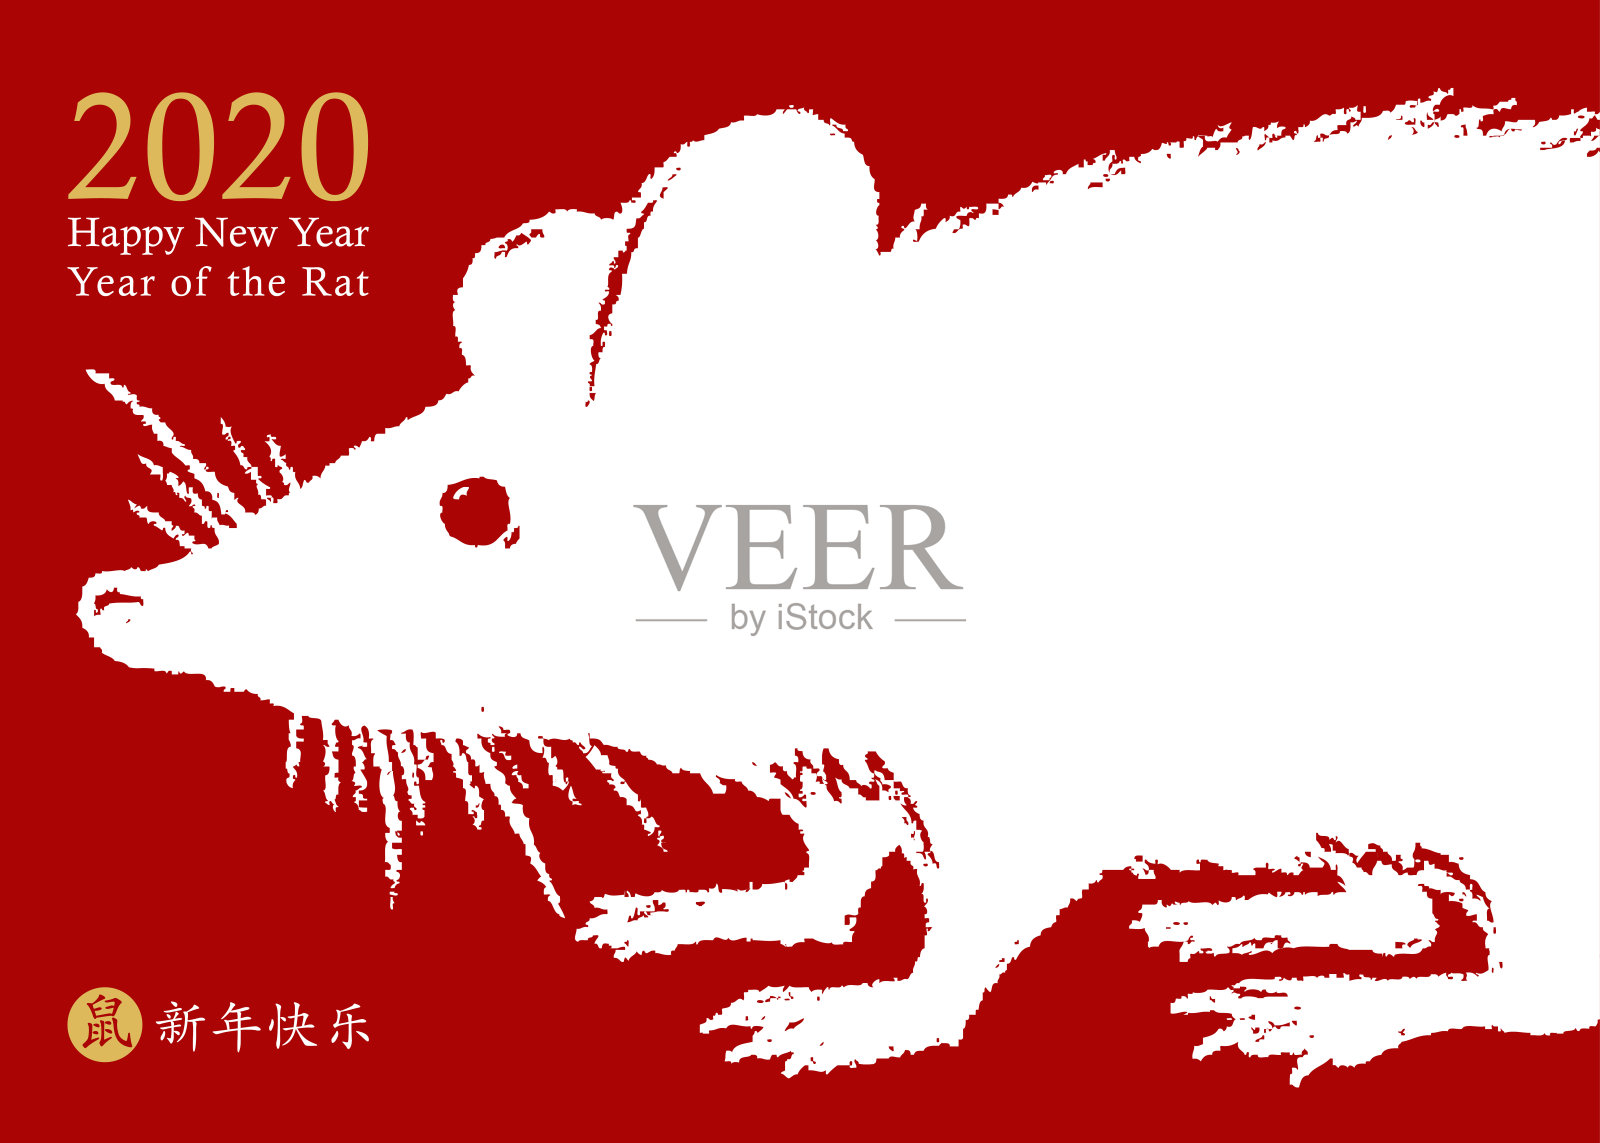 2020年的鼠年。向量名片设计。手绘黑色巨大的老鼠图标在白色的背景。十二生肖动物的象征。中国象形文字翻译:2020年新年快乐，老鼠。插画图片素材